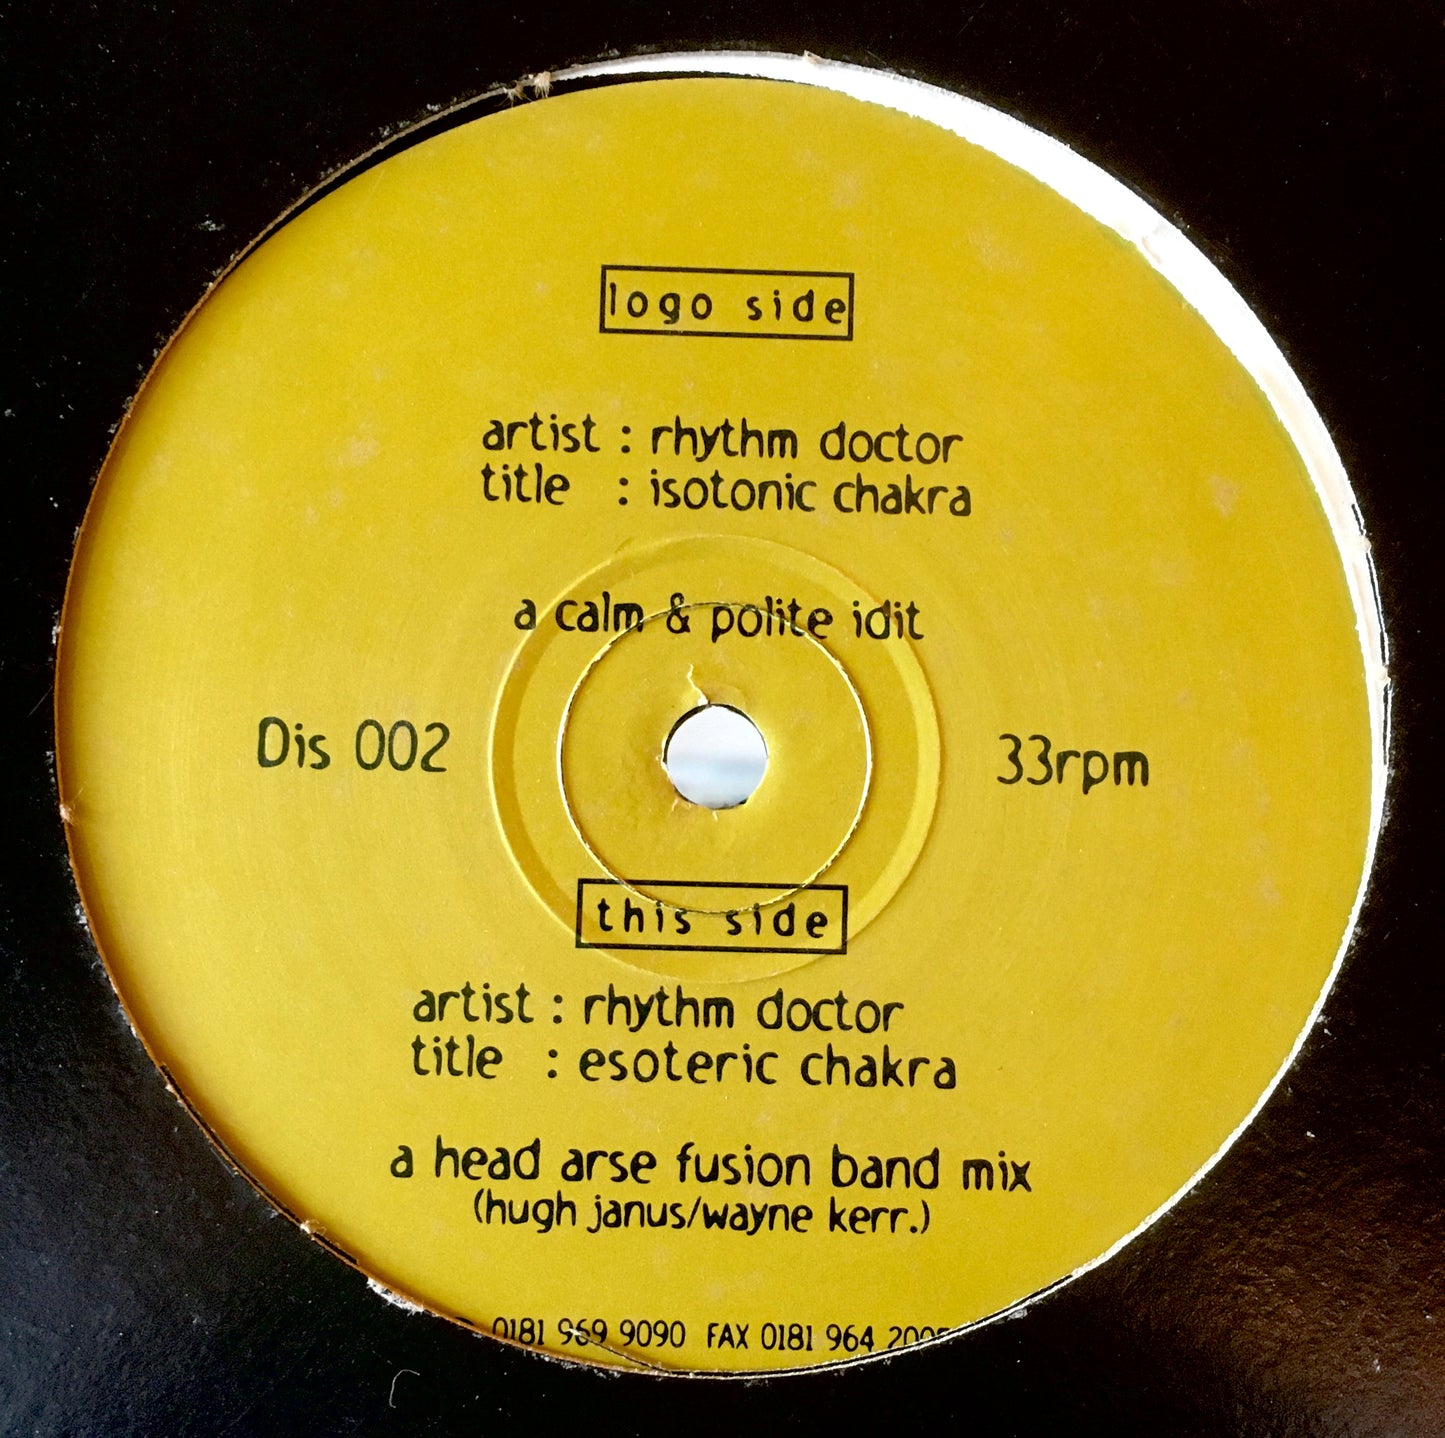 Rhythm Doctor – Esoteric Chakra (Idjut Boys remixes)